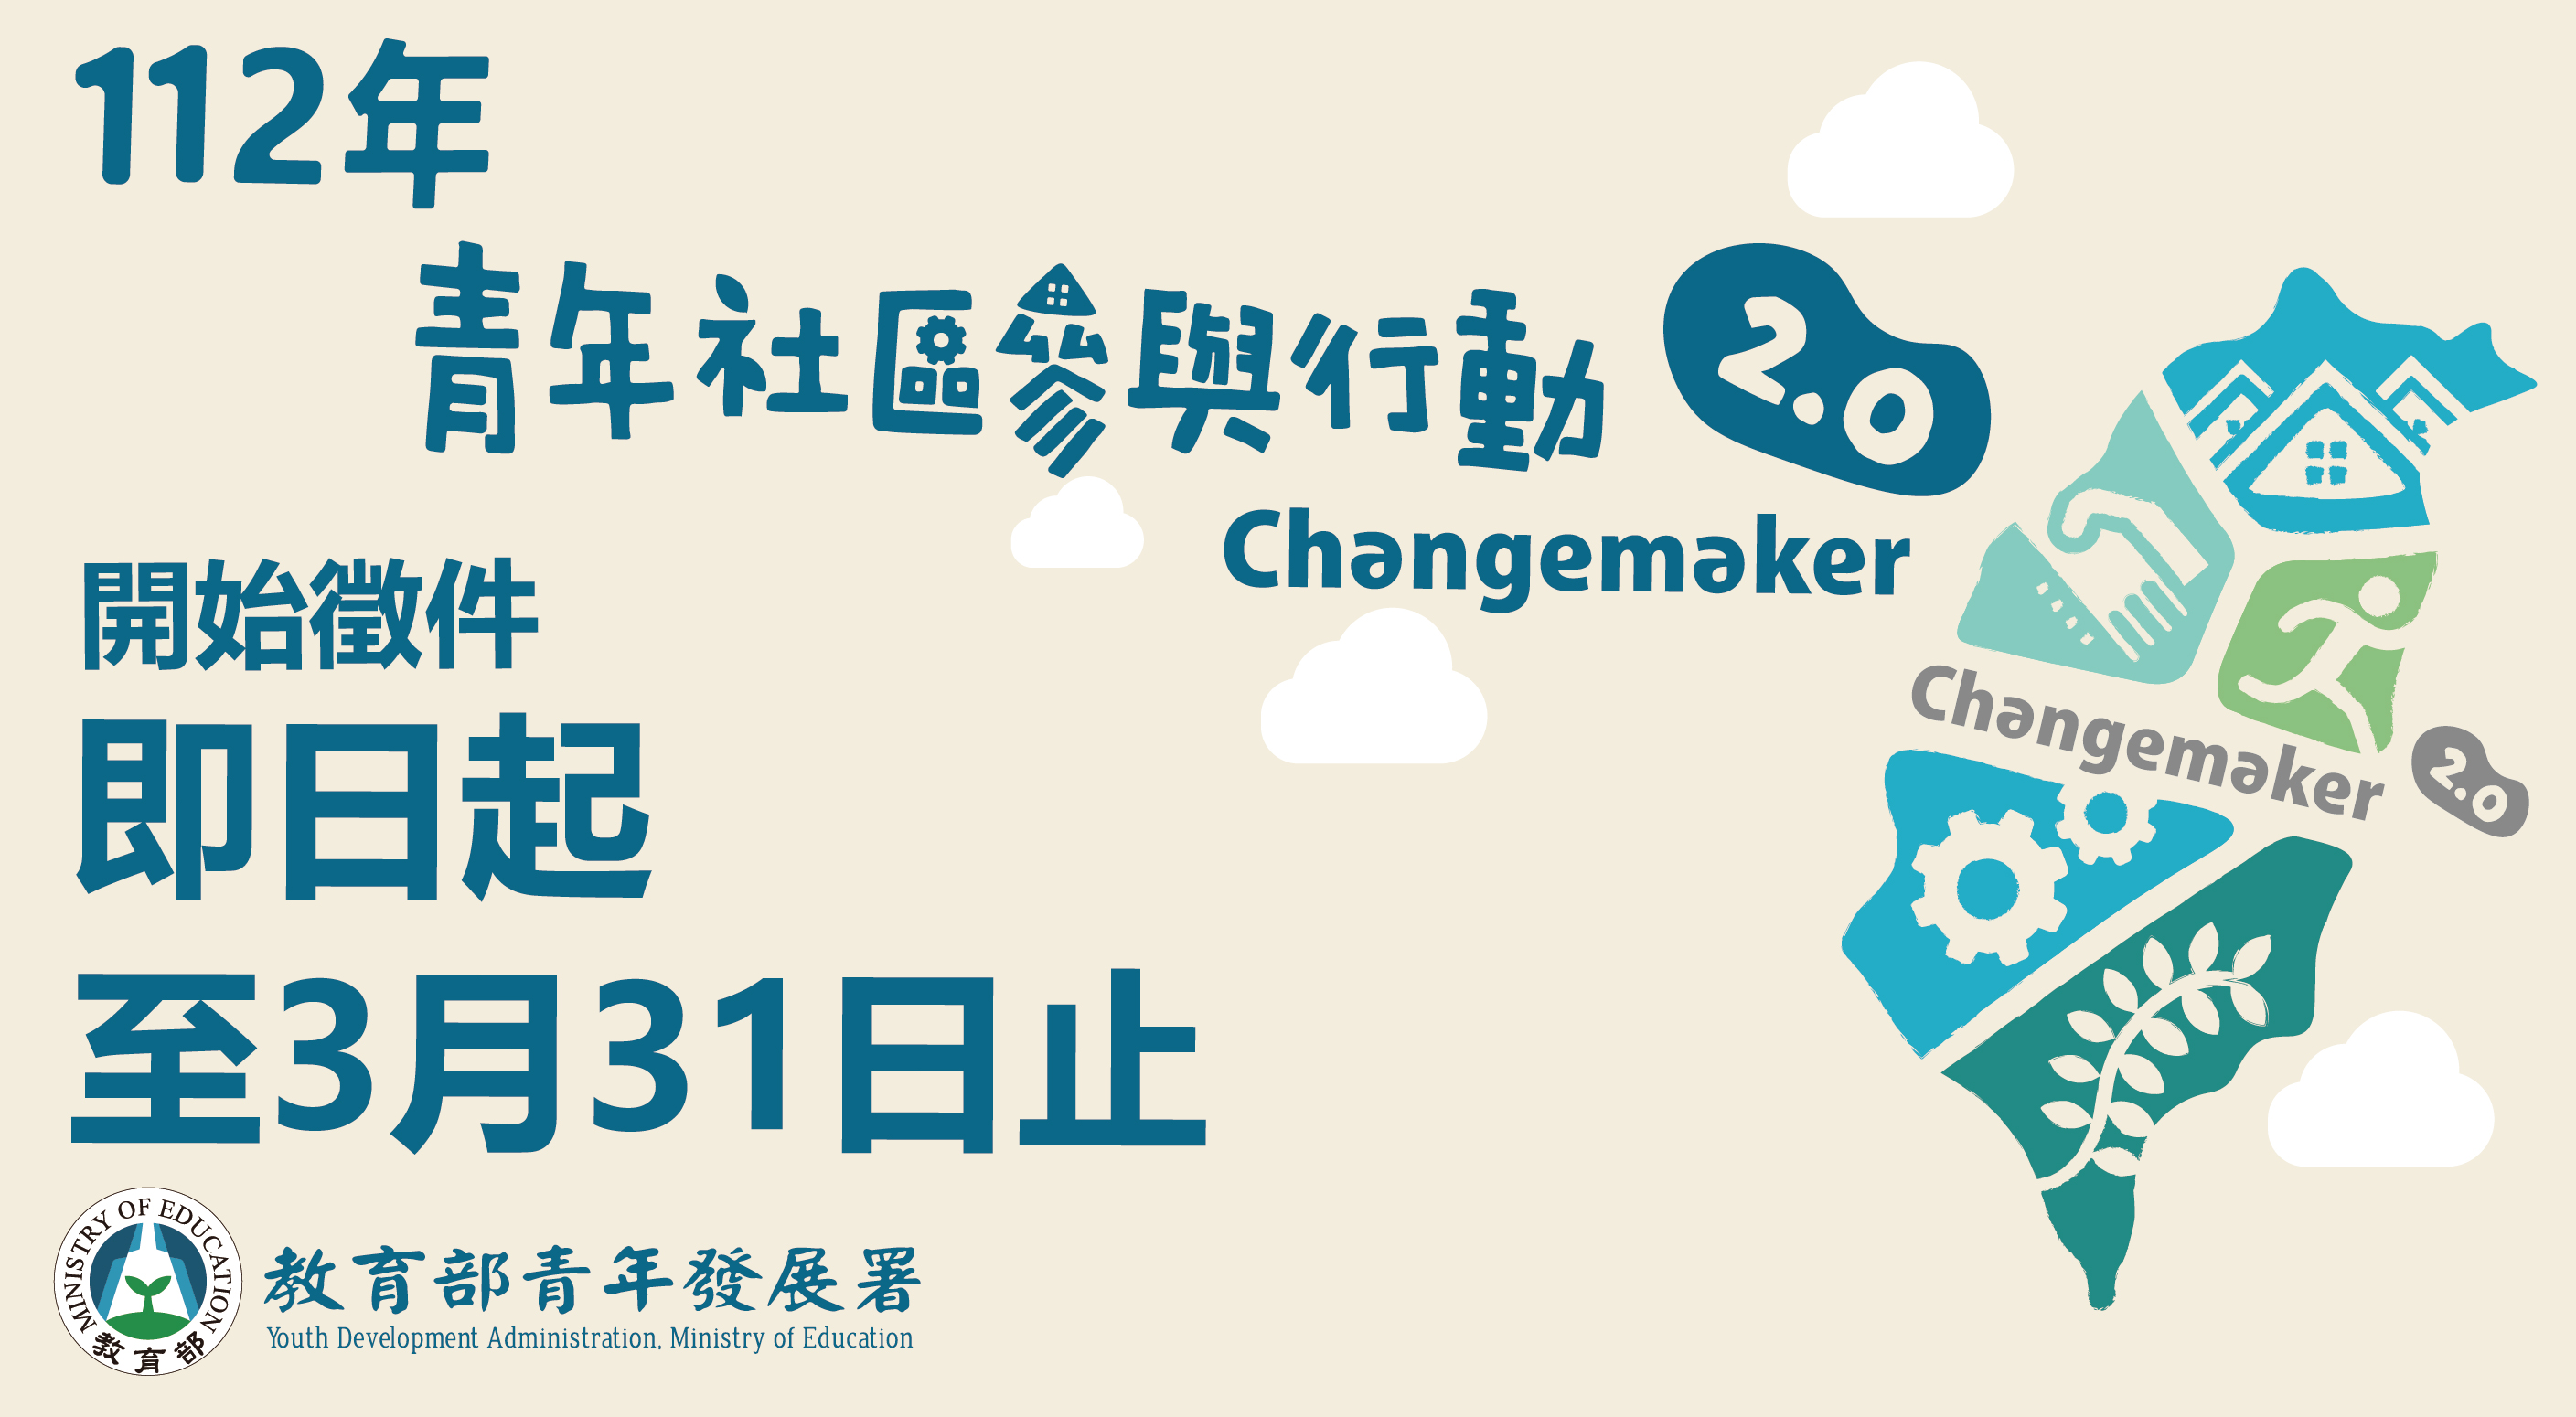  112年青年社區參與行動2．0 Changemaker計畫開始提案徵件